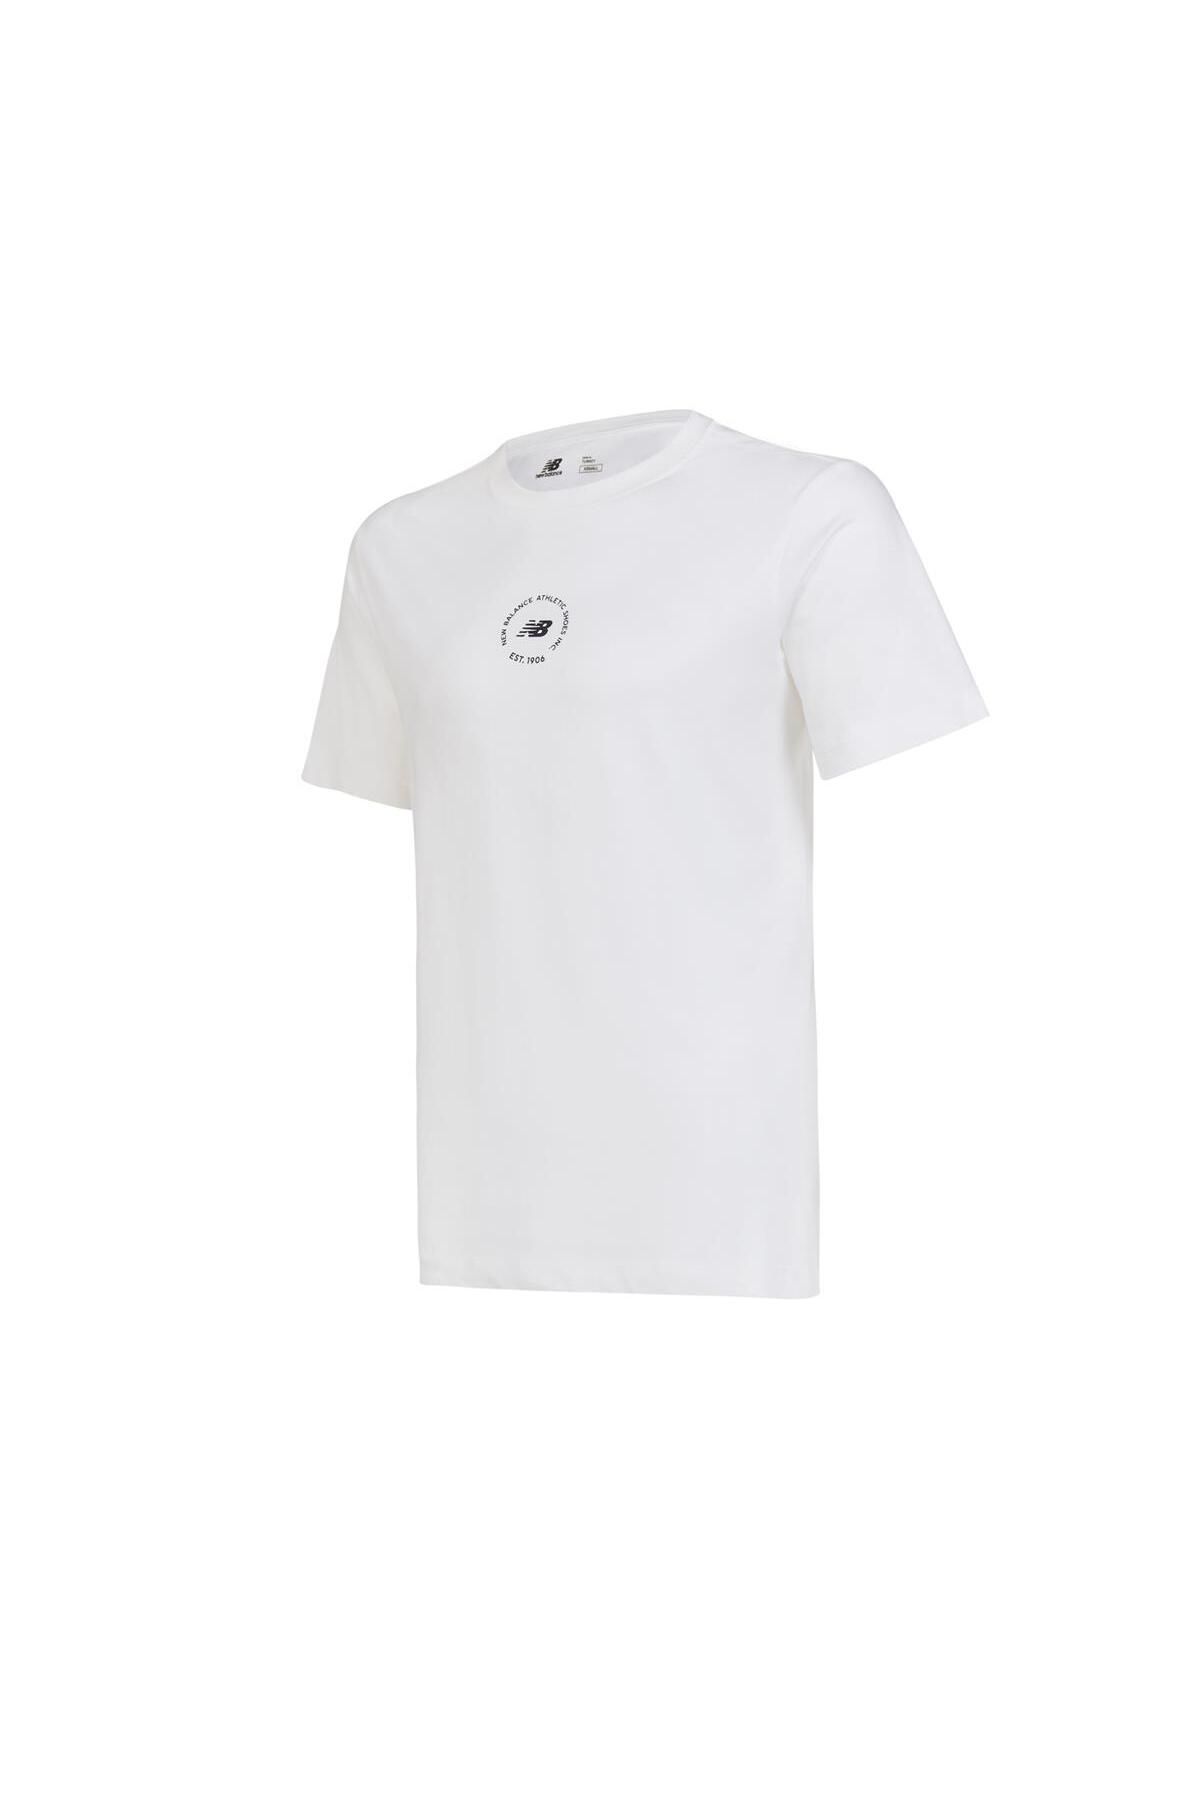 New Balance Nb Unisex Lifesyle T-shirt